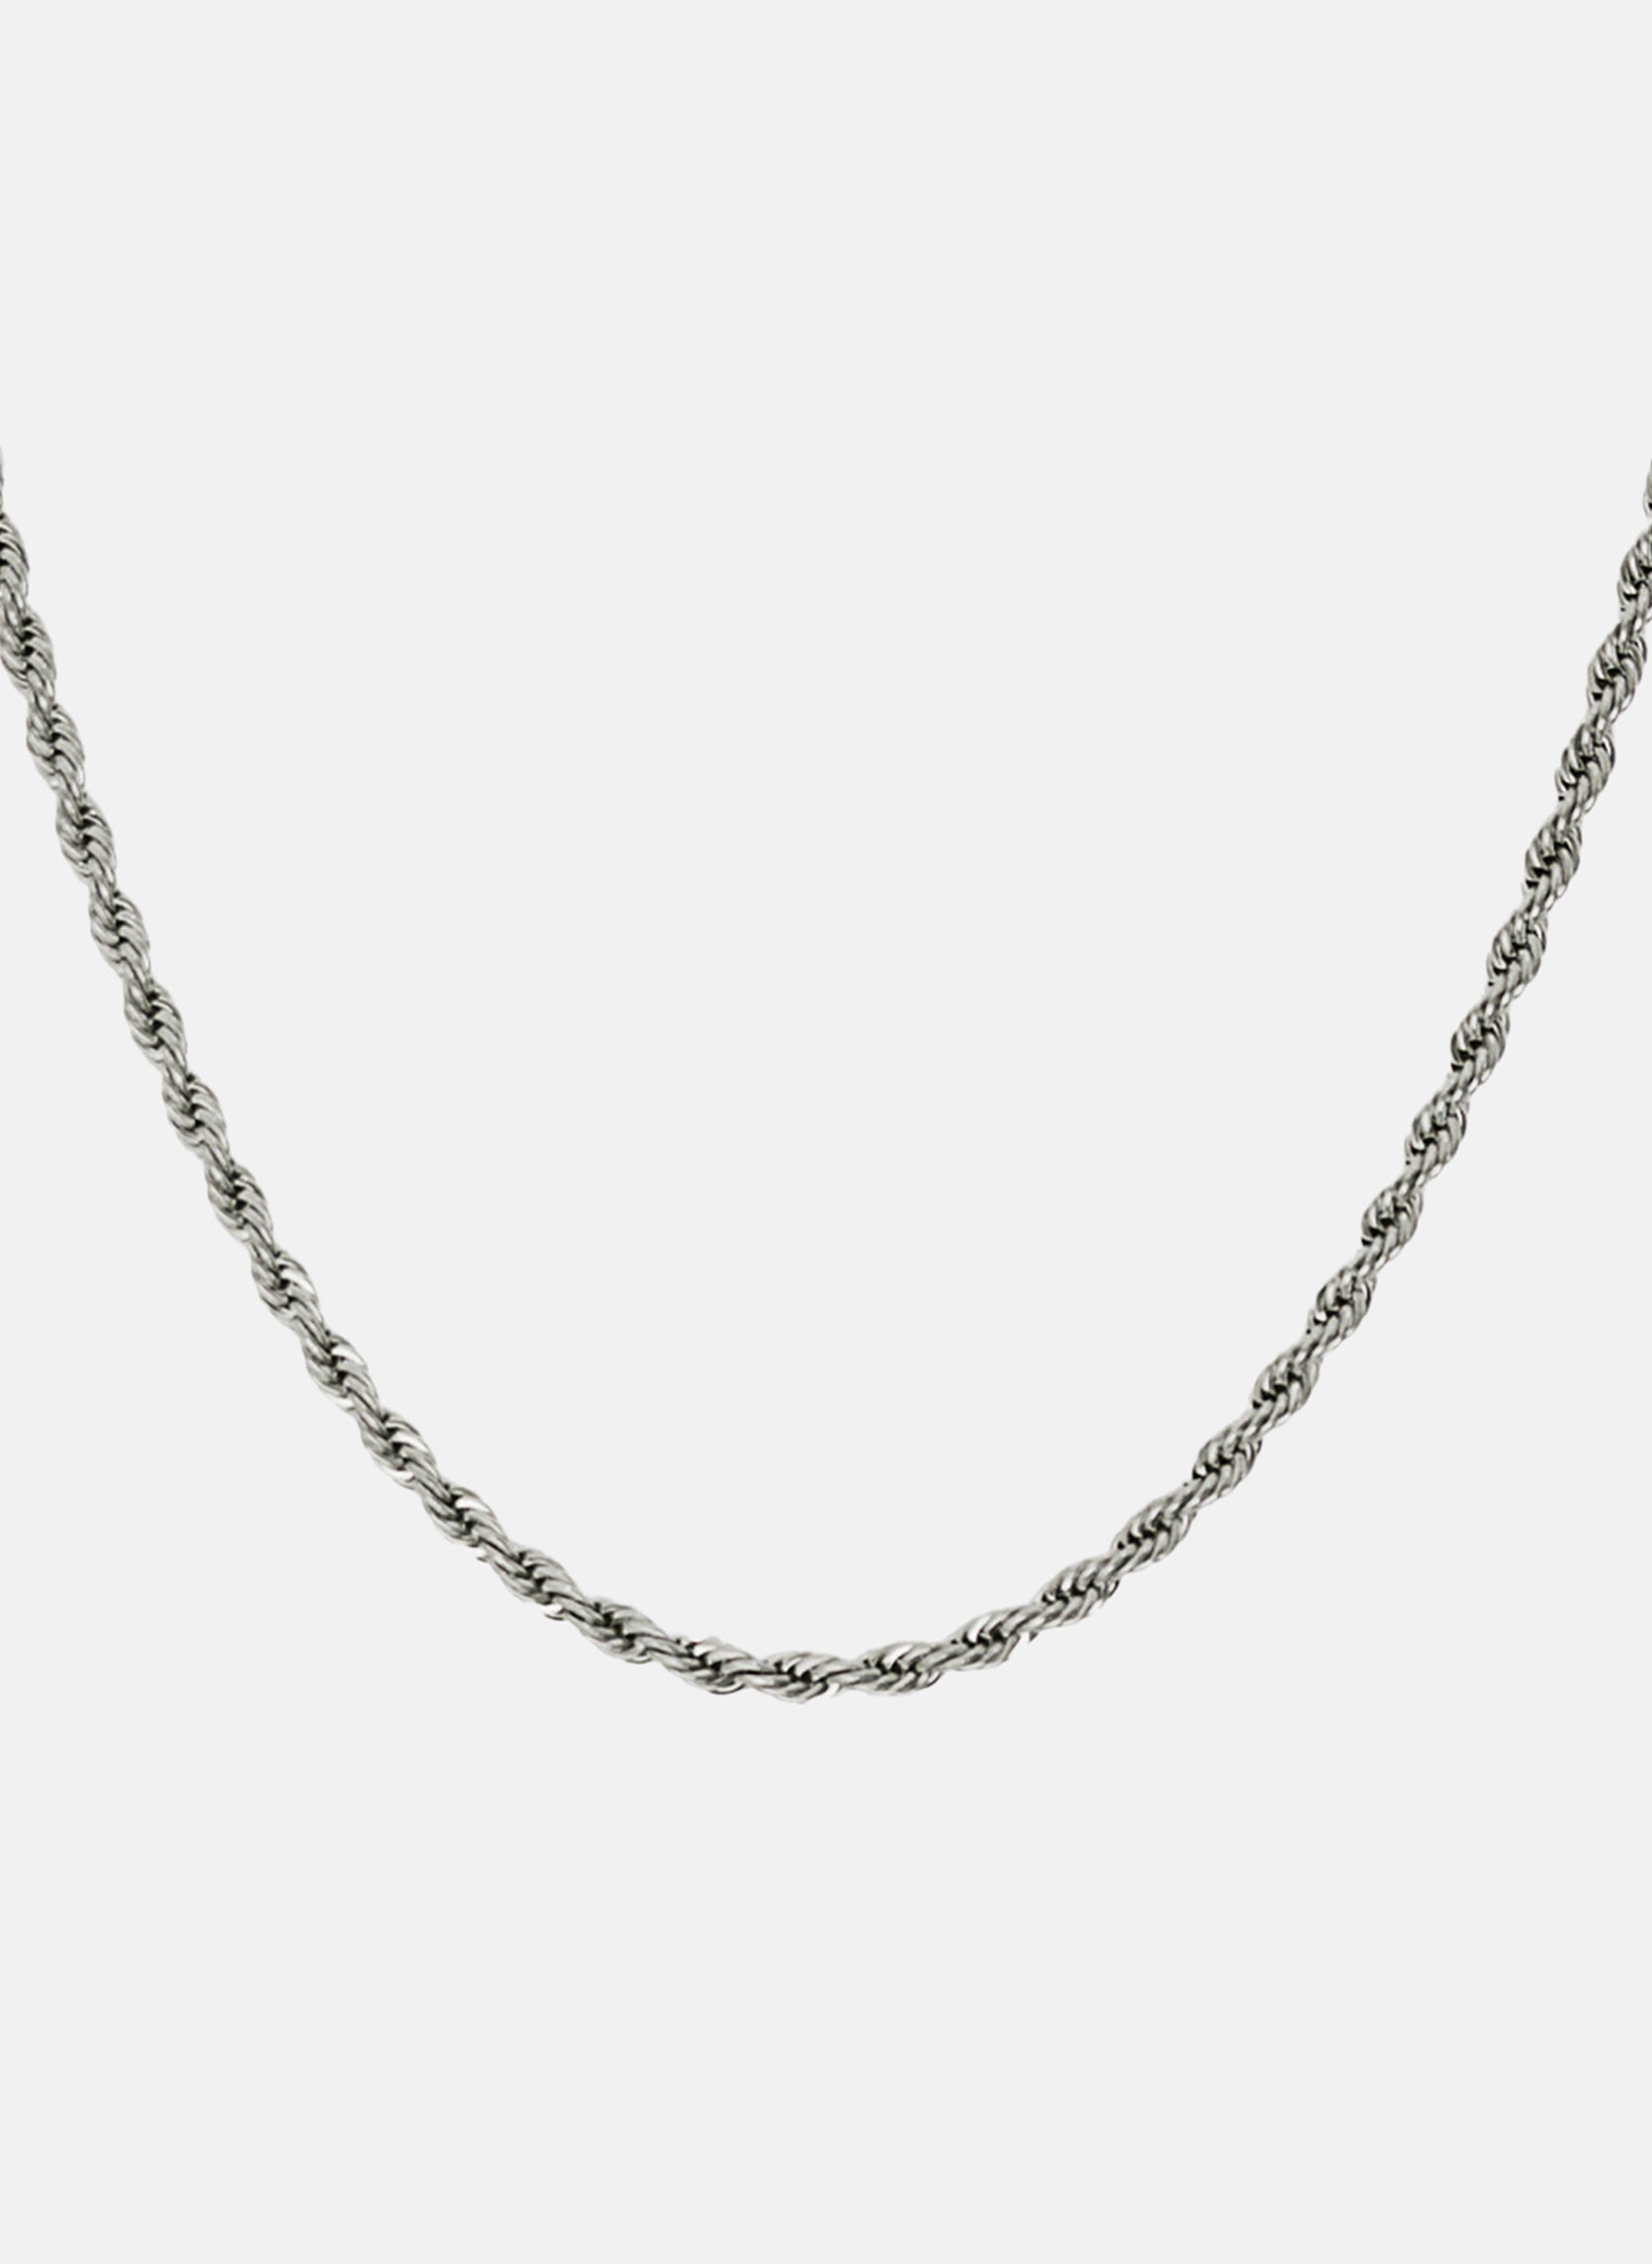 Chain necklace Apus